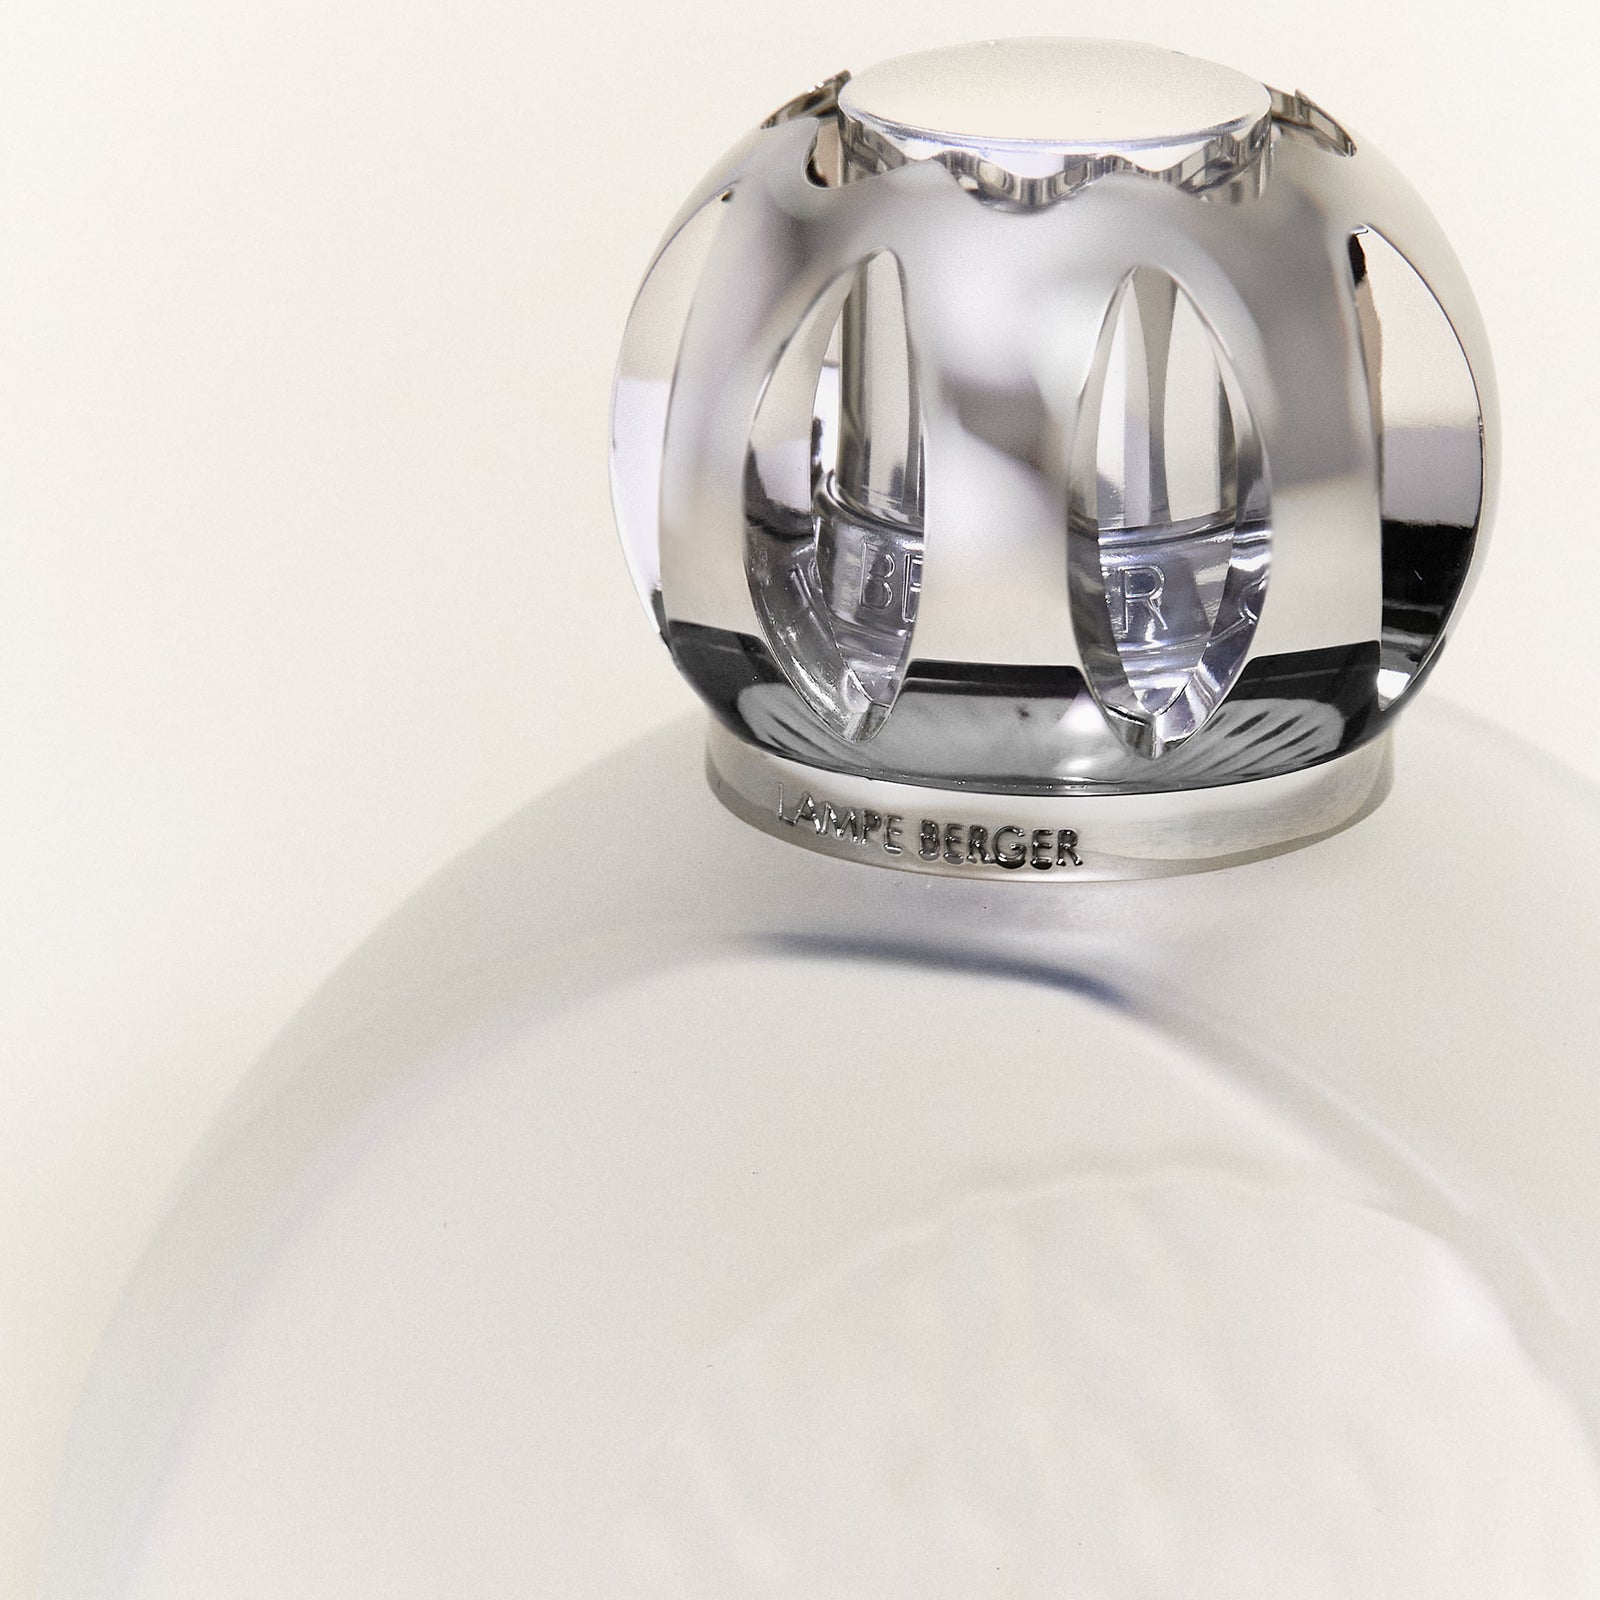 Coffret lampe Berger Astral Givré    - Maison Berger Paris - Parfums d'ambiance - 